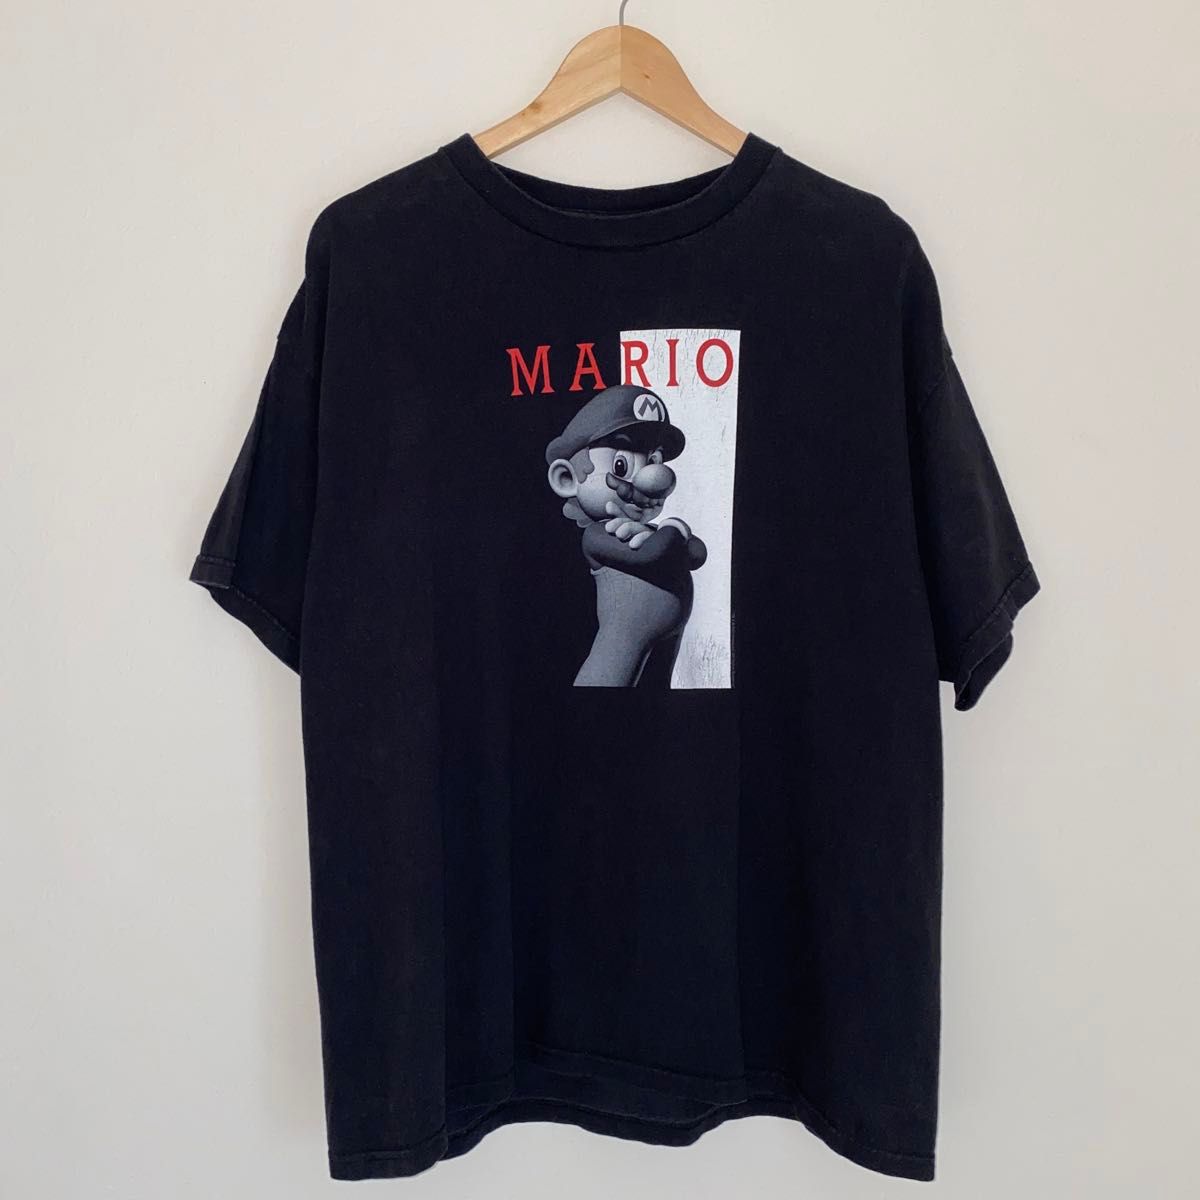 2007 Nintendo MARIO マリオ Tシャツ スカーフェイス 黒 Tシャツ 古着